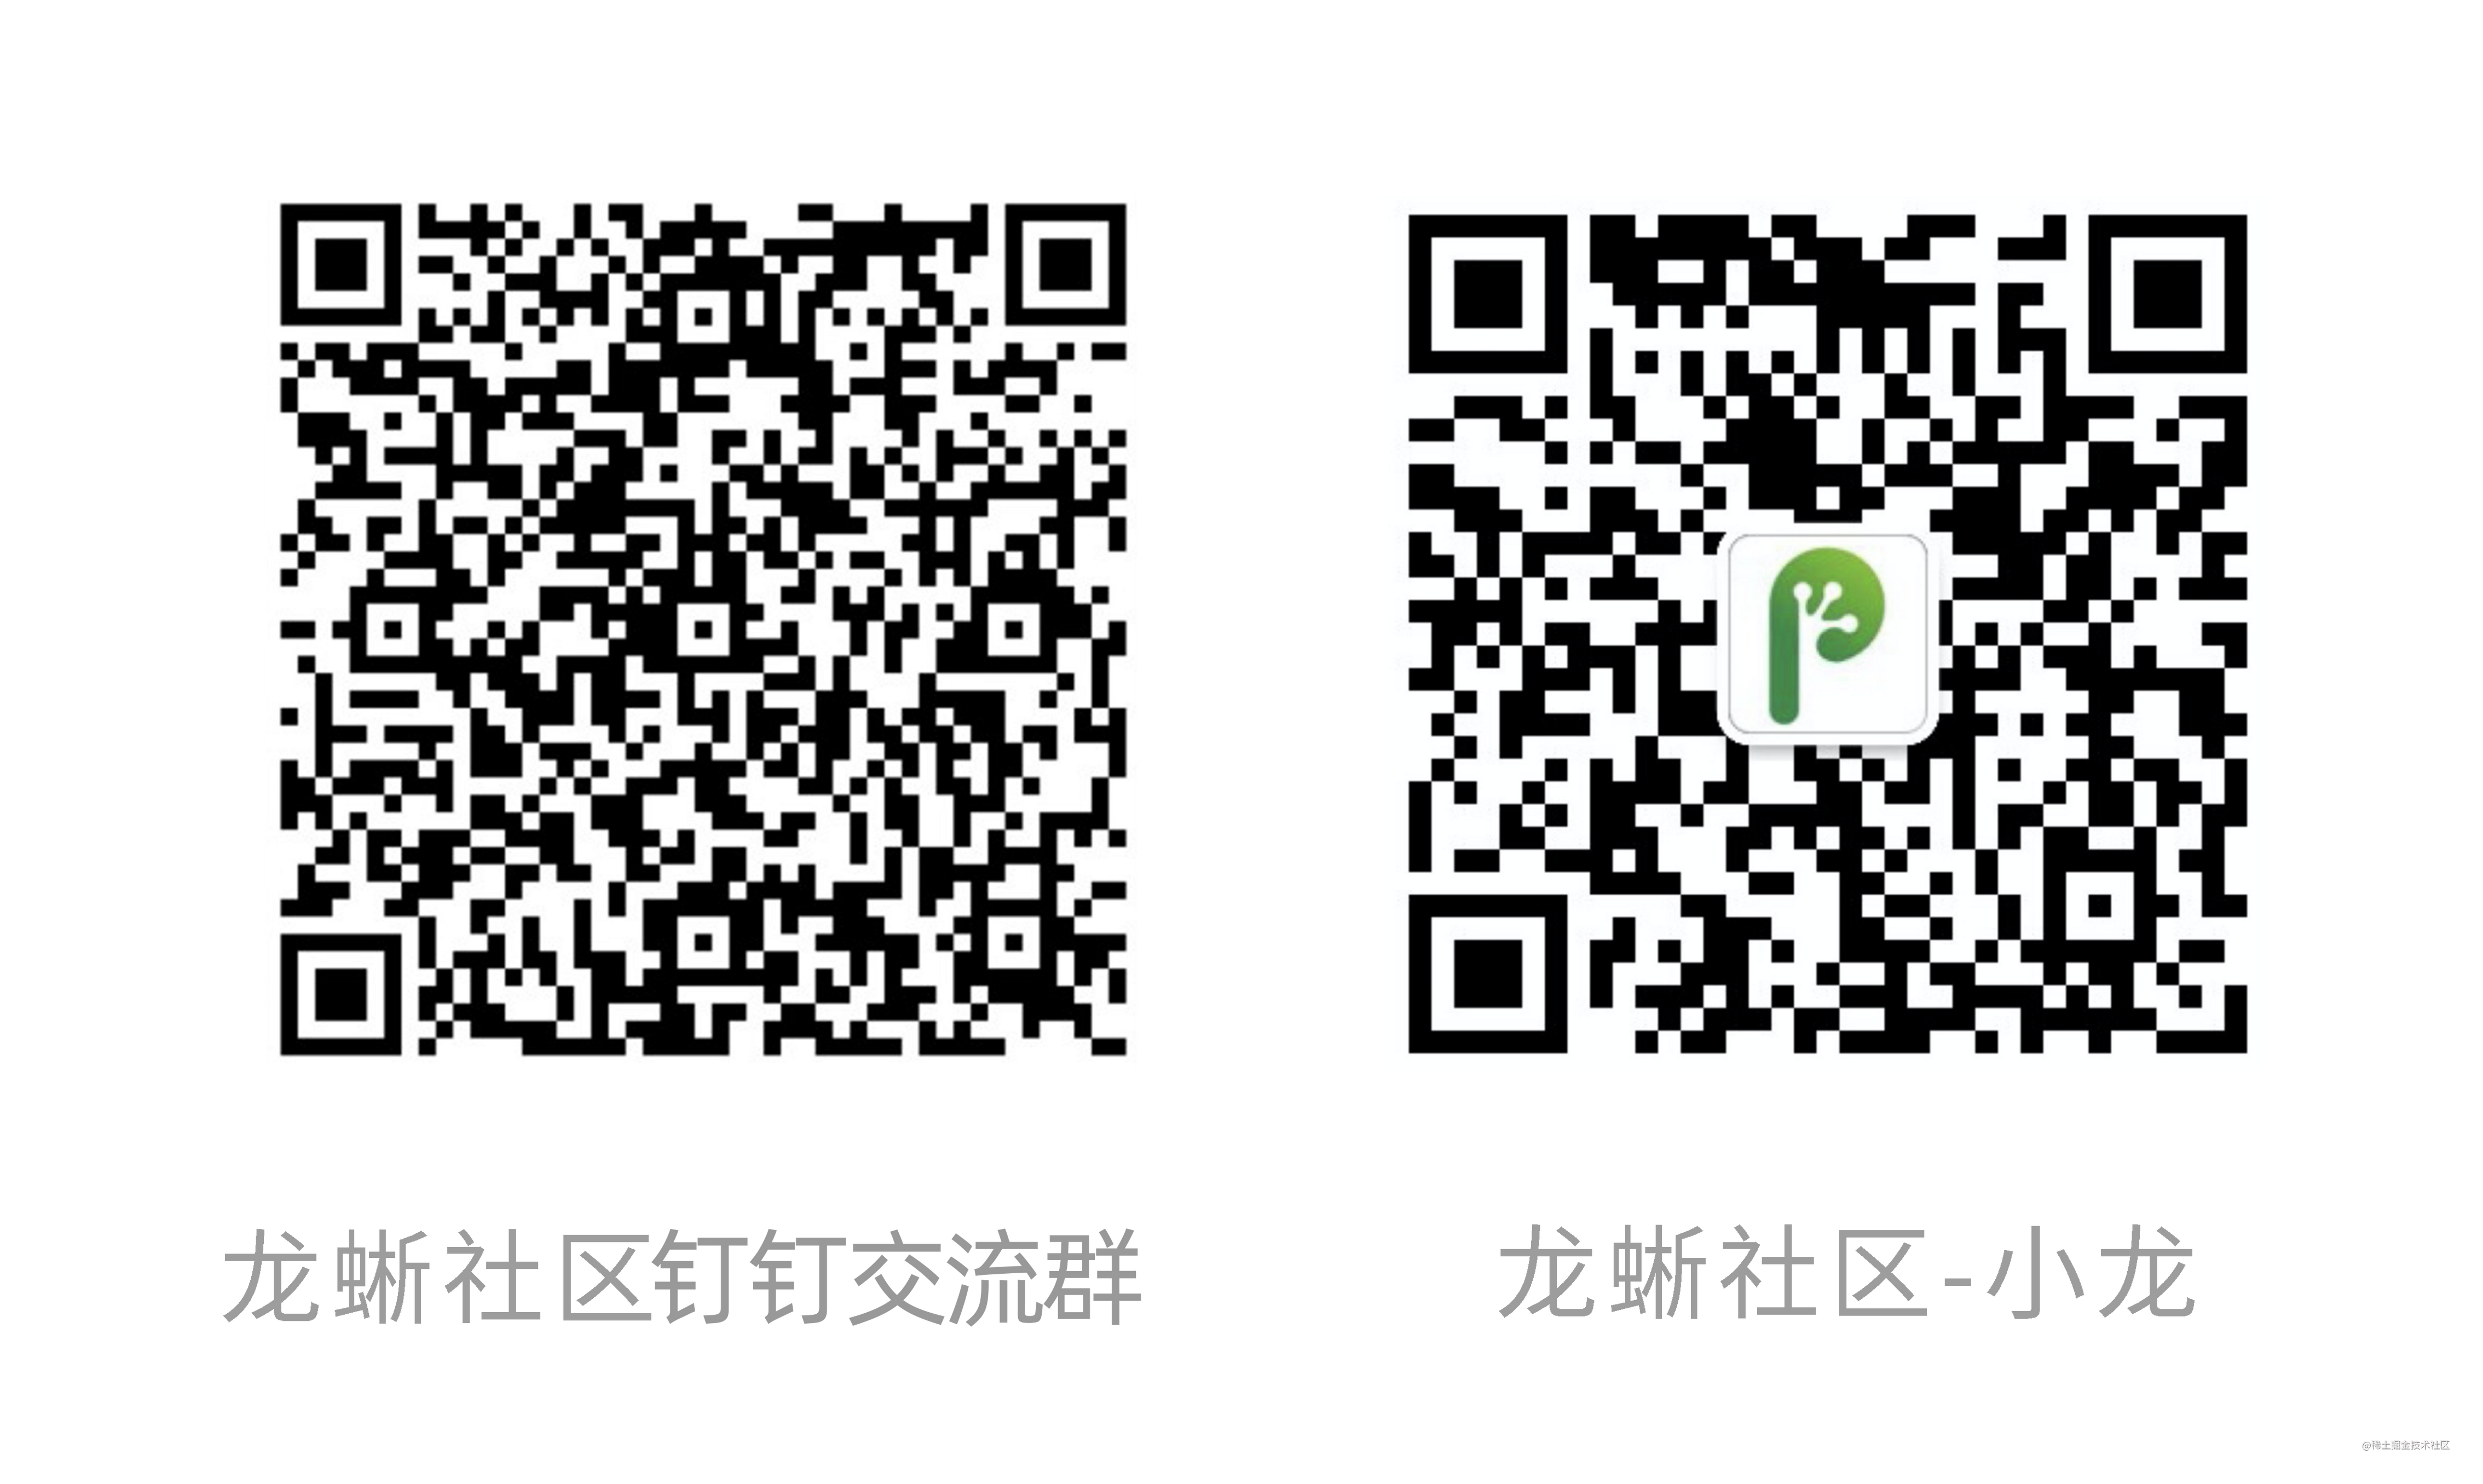 オフィシャルアカウント＆Xiaolong Communication Group.png